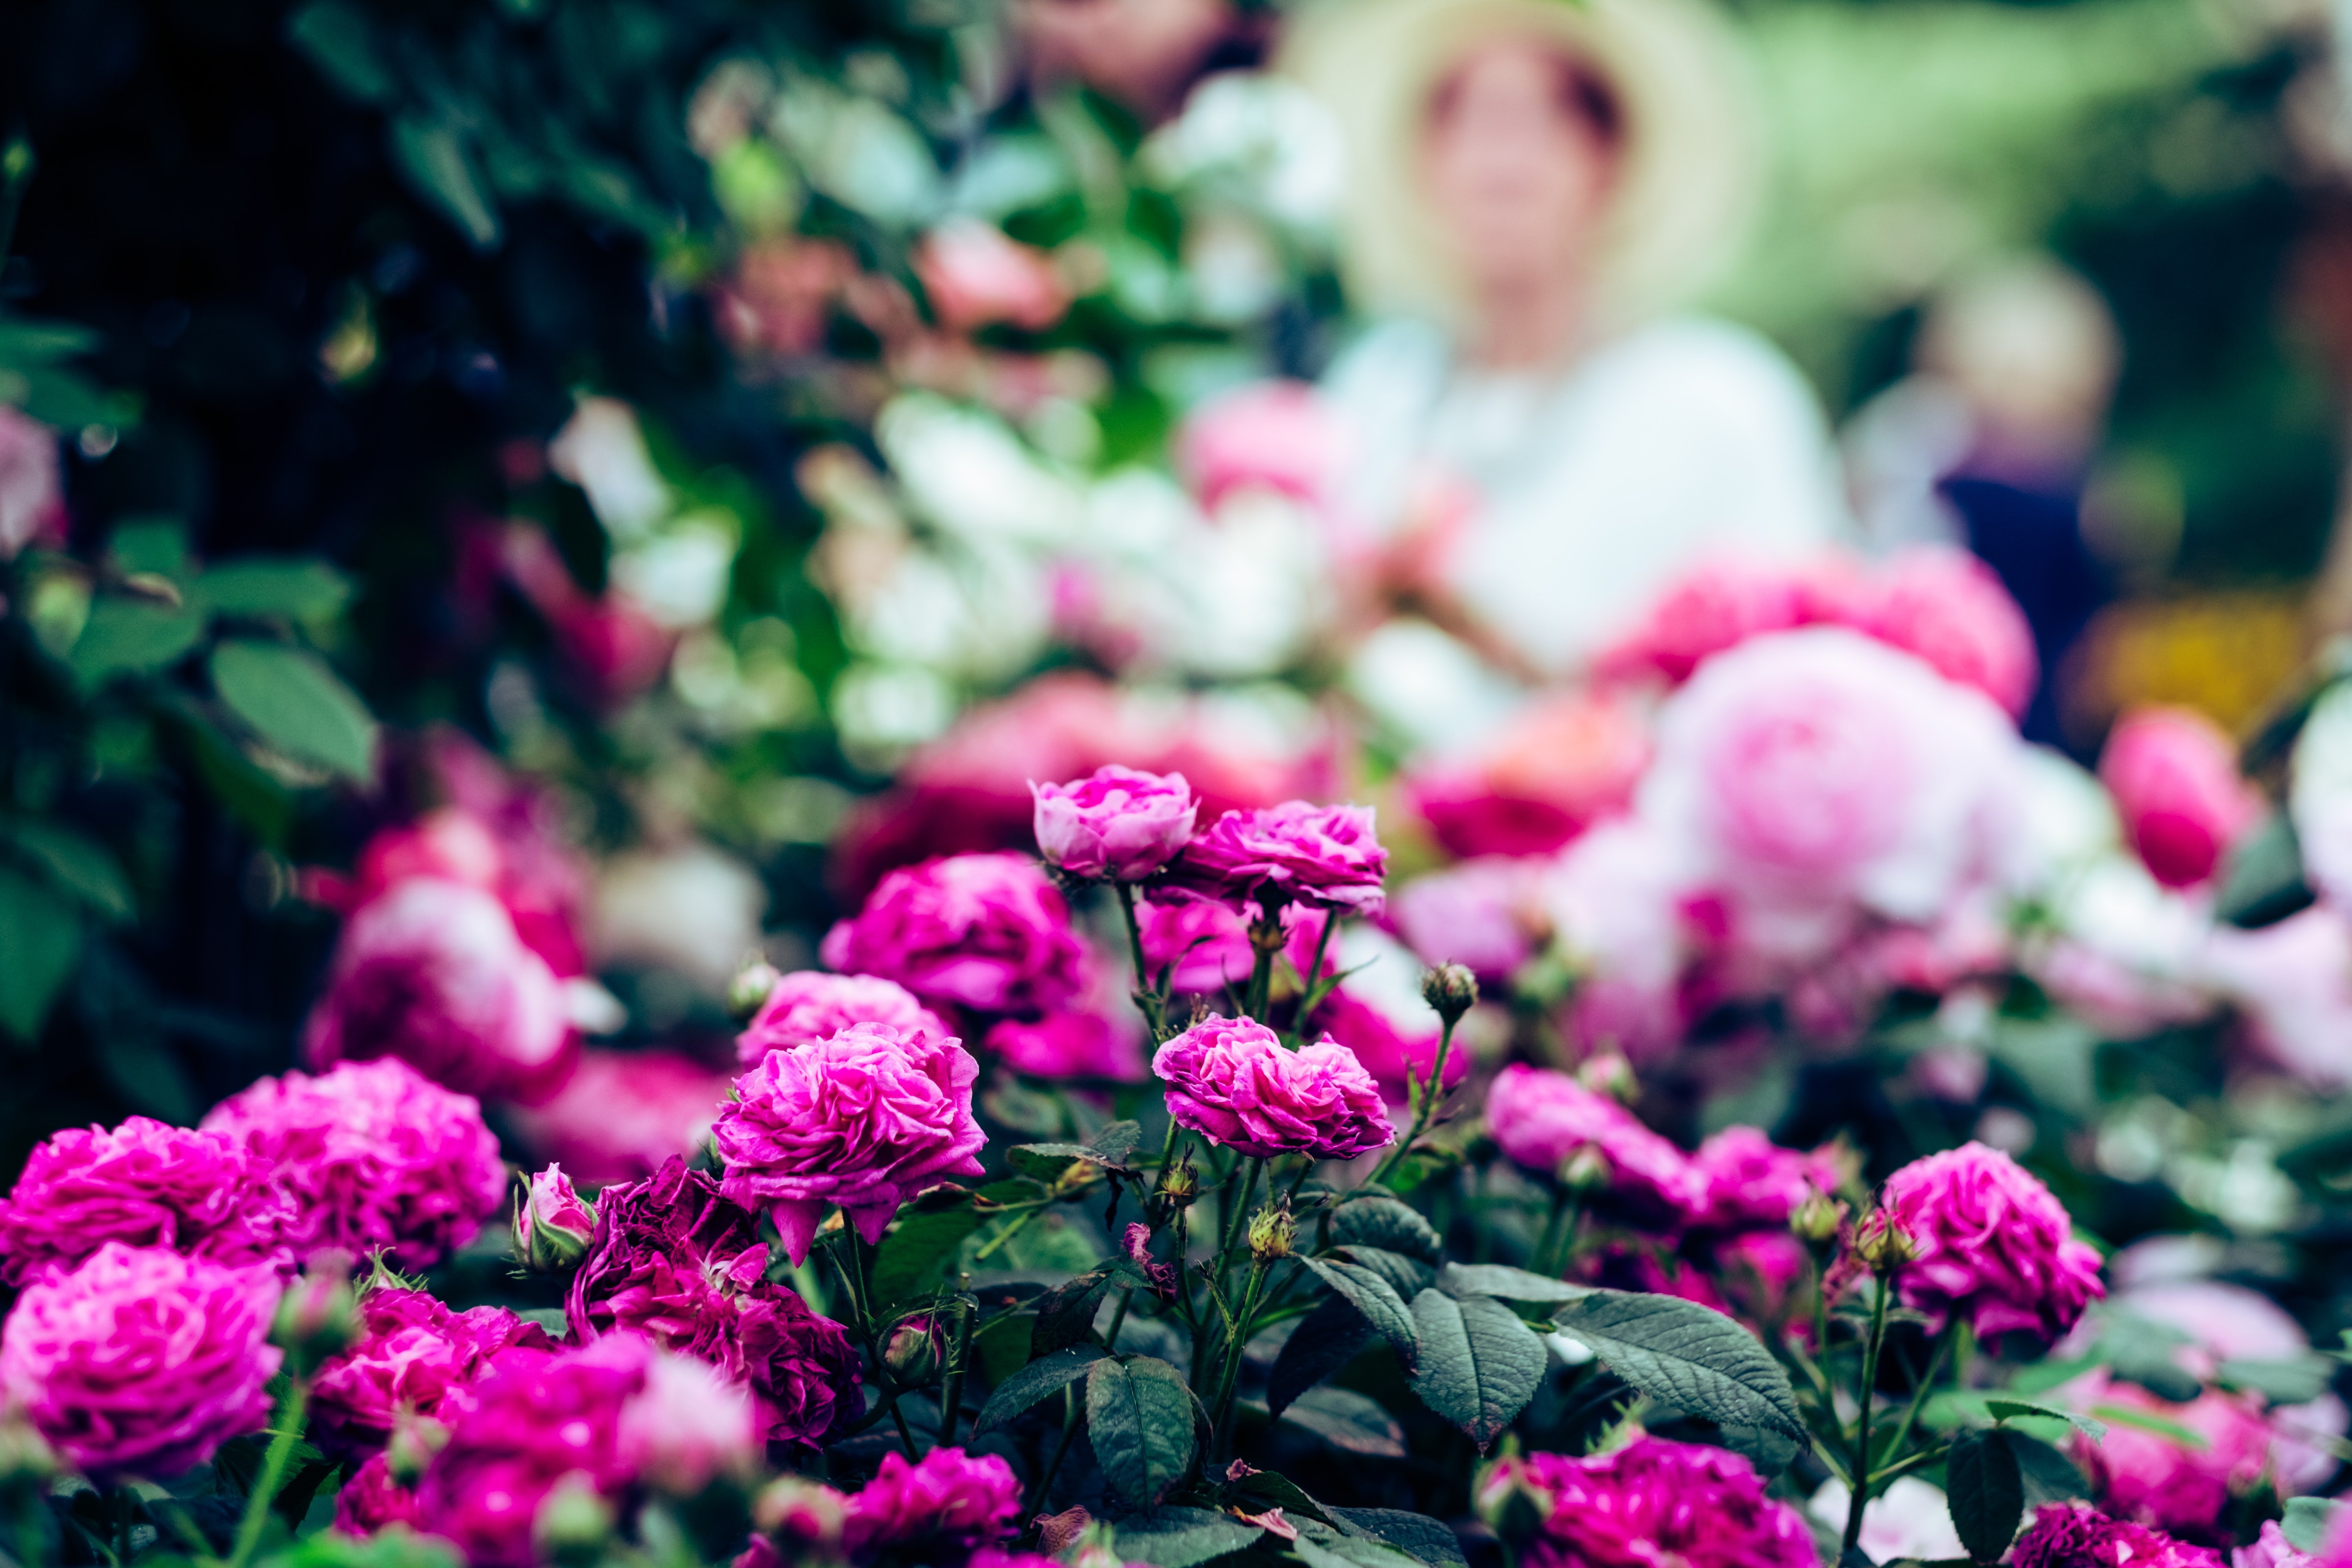 Agatha war begeistert, als ihre seltenen Rosenpflanzen ankamen. | Quelle: Unsplash